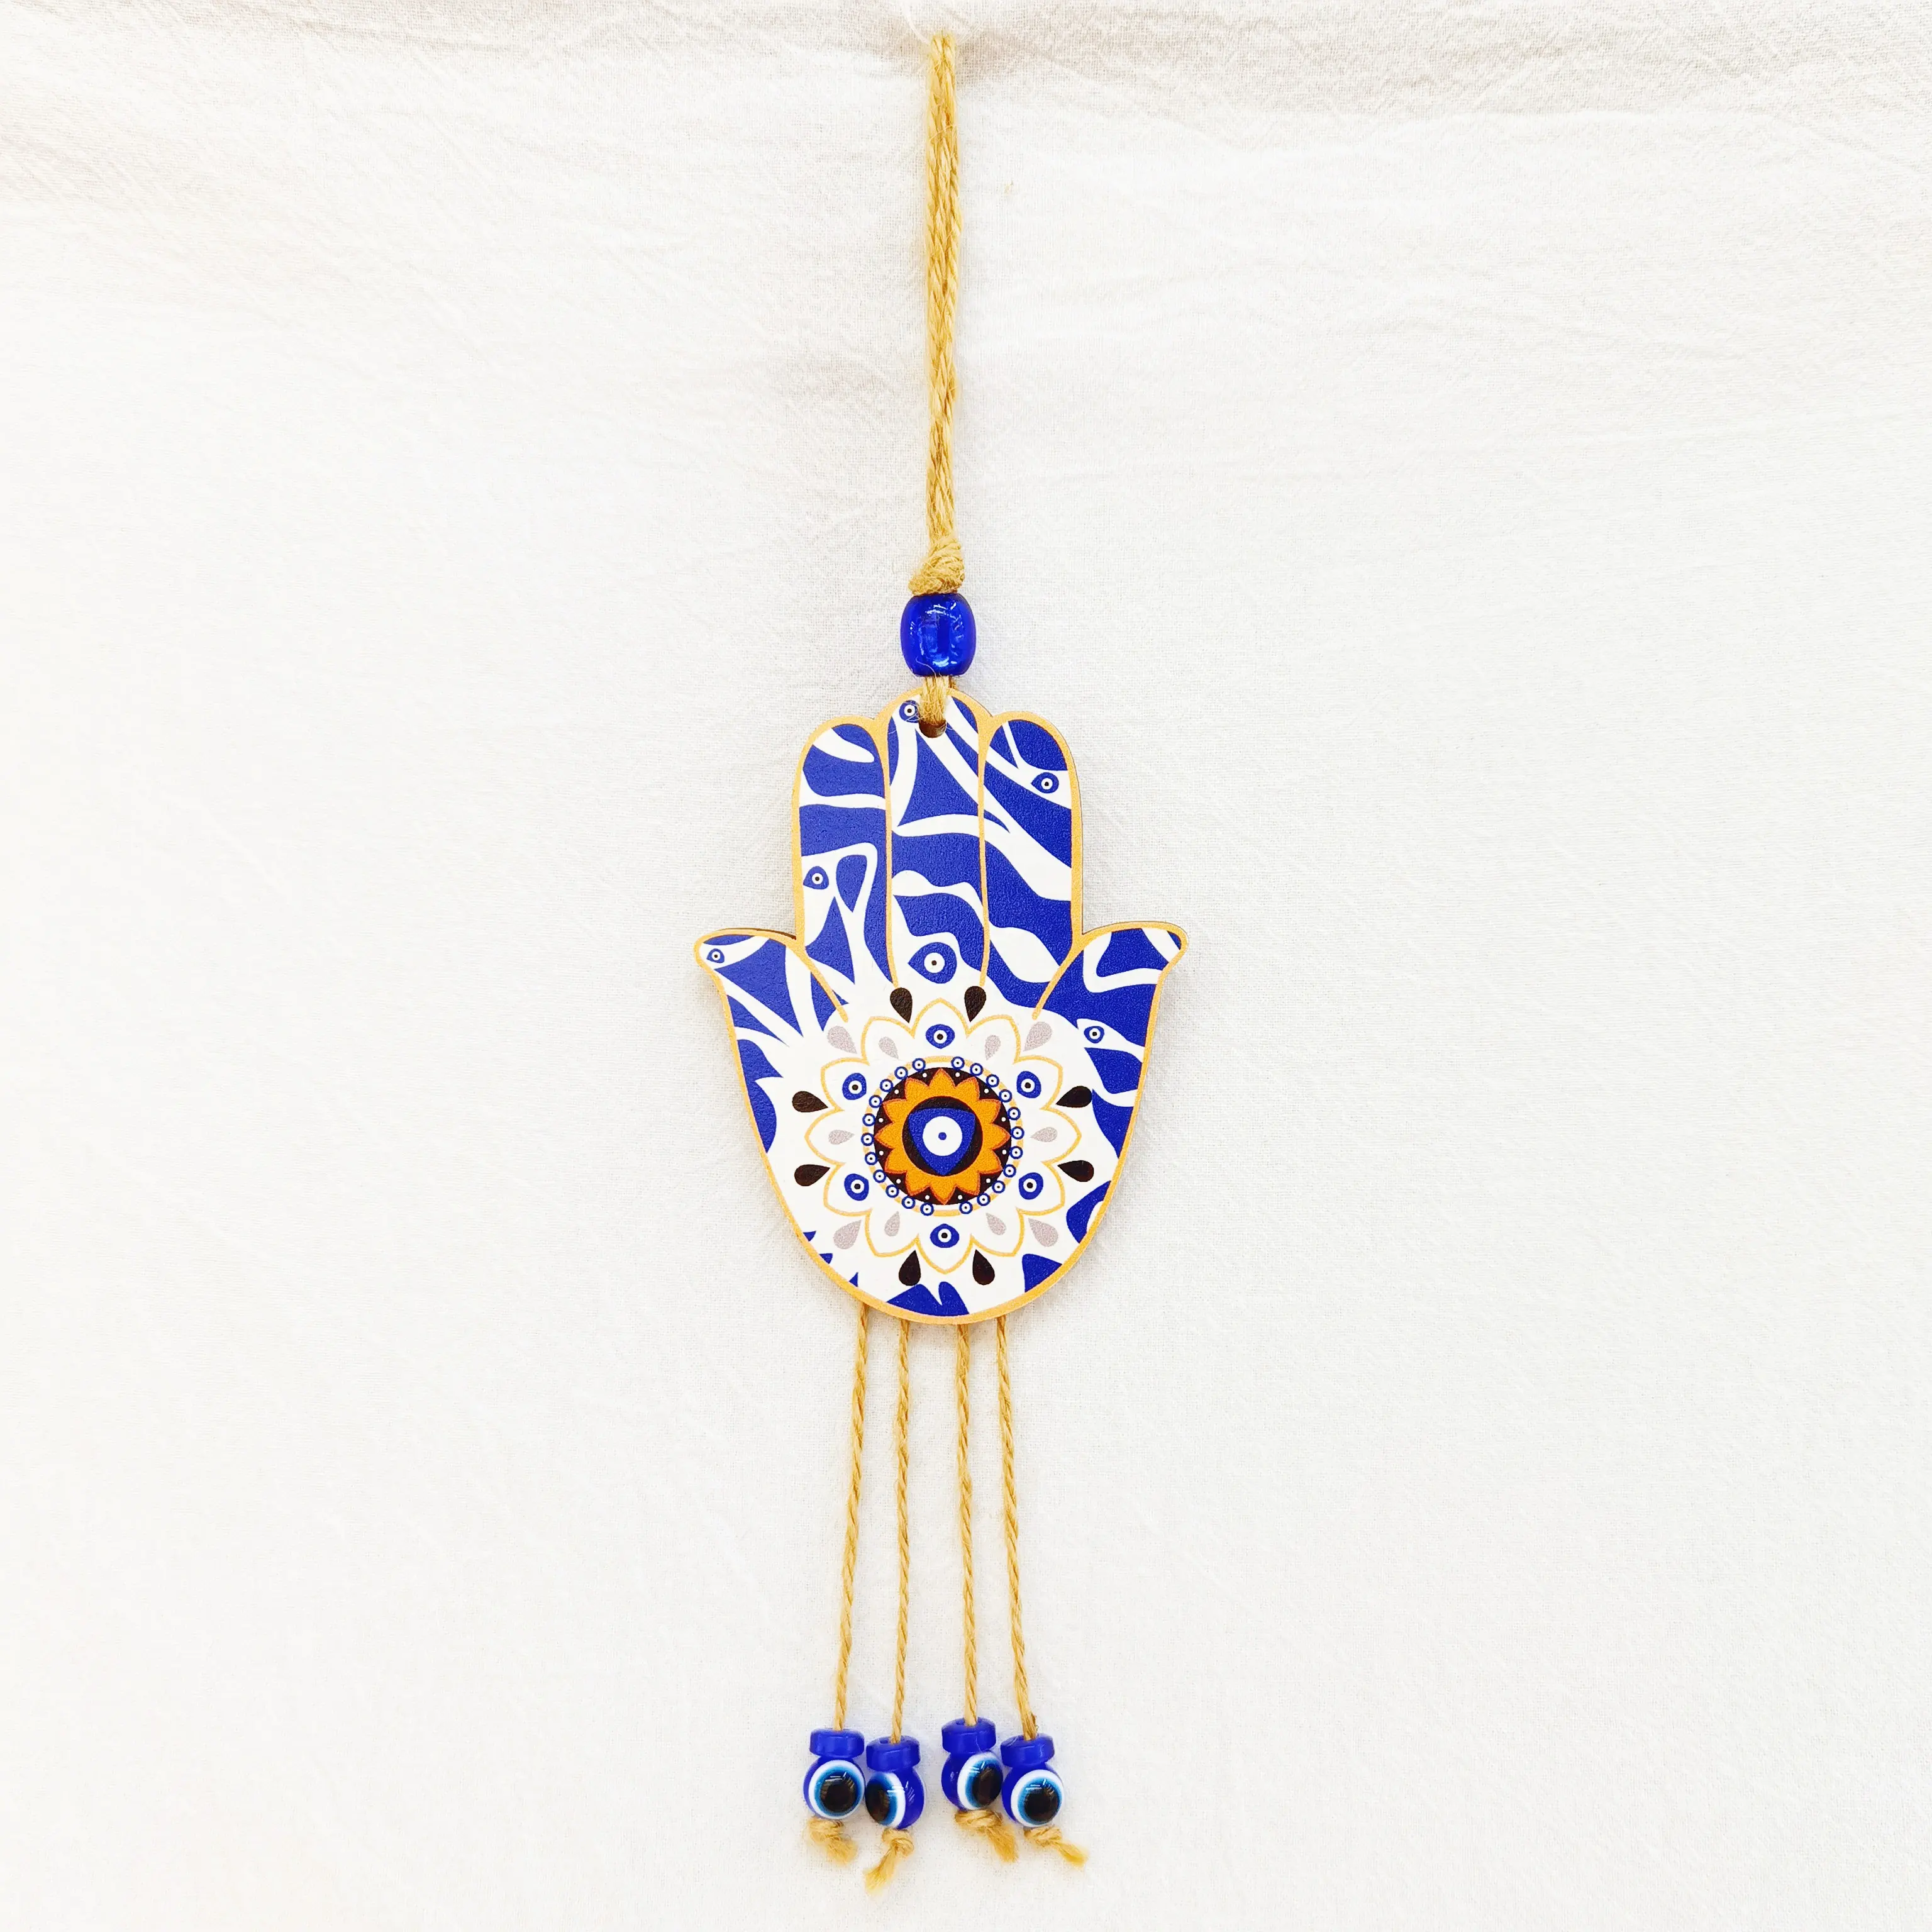 Amuleto colgante de pared de Fátima, hecho a mano, cristal, ojo malvado, decoración del hogar